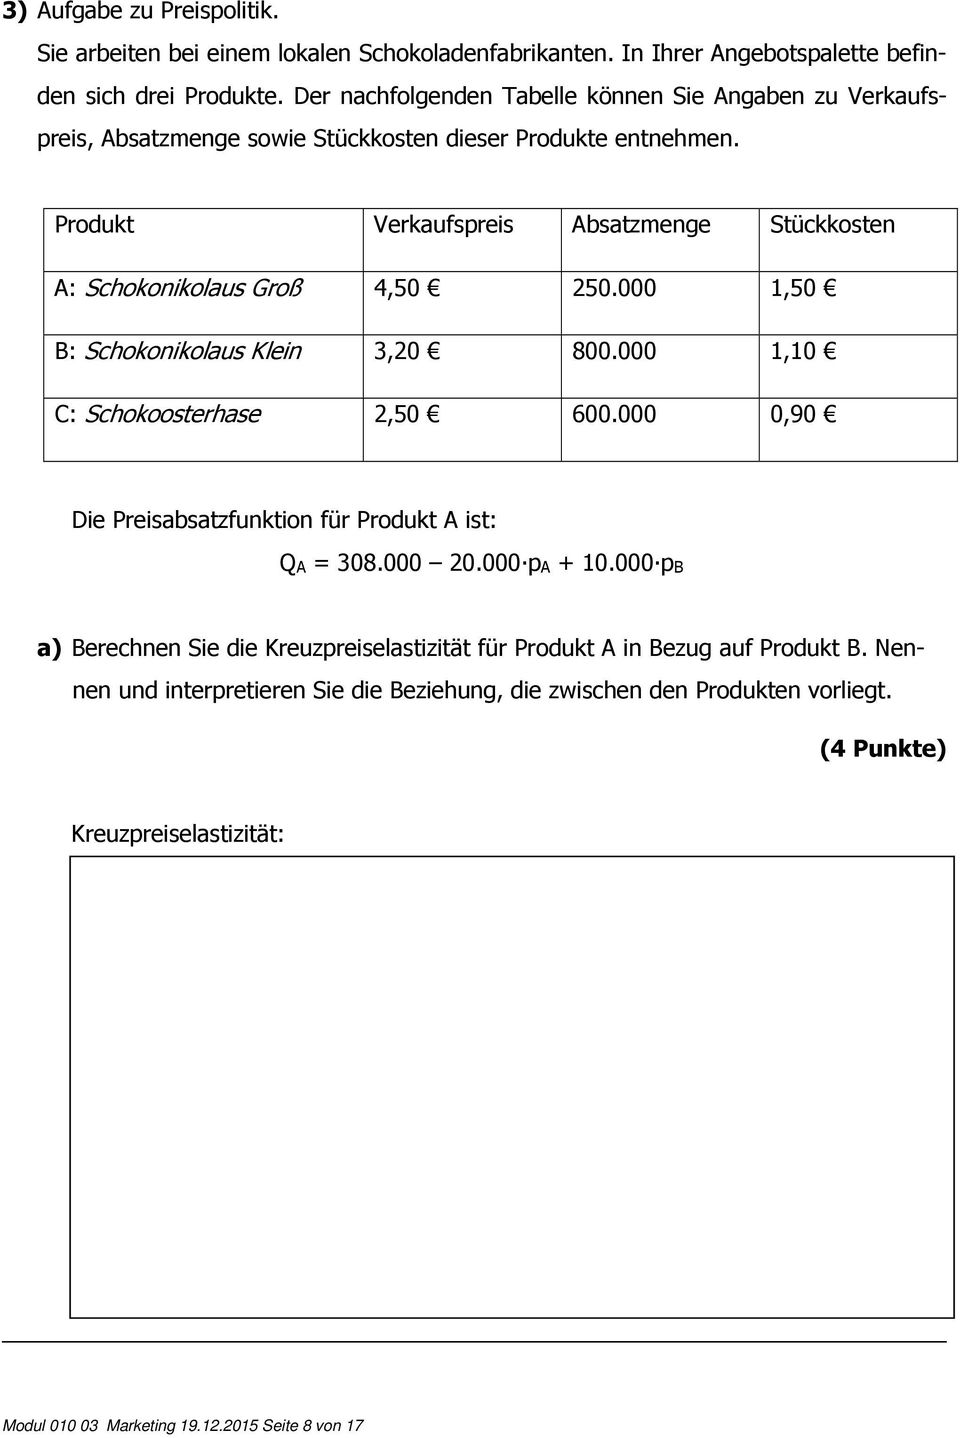 Produkt Verkaufspreis Absatzmenge Stückkosten A: Schokonikolaus Groß 4,50 250.000 1,50 B: Schokonikolaus Klein 3,20 800.000 1,10 C: Schokoosterhase 2,50 600.